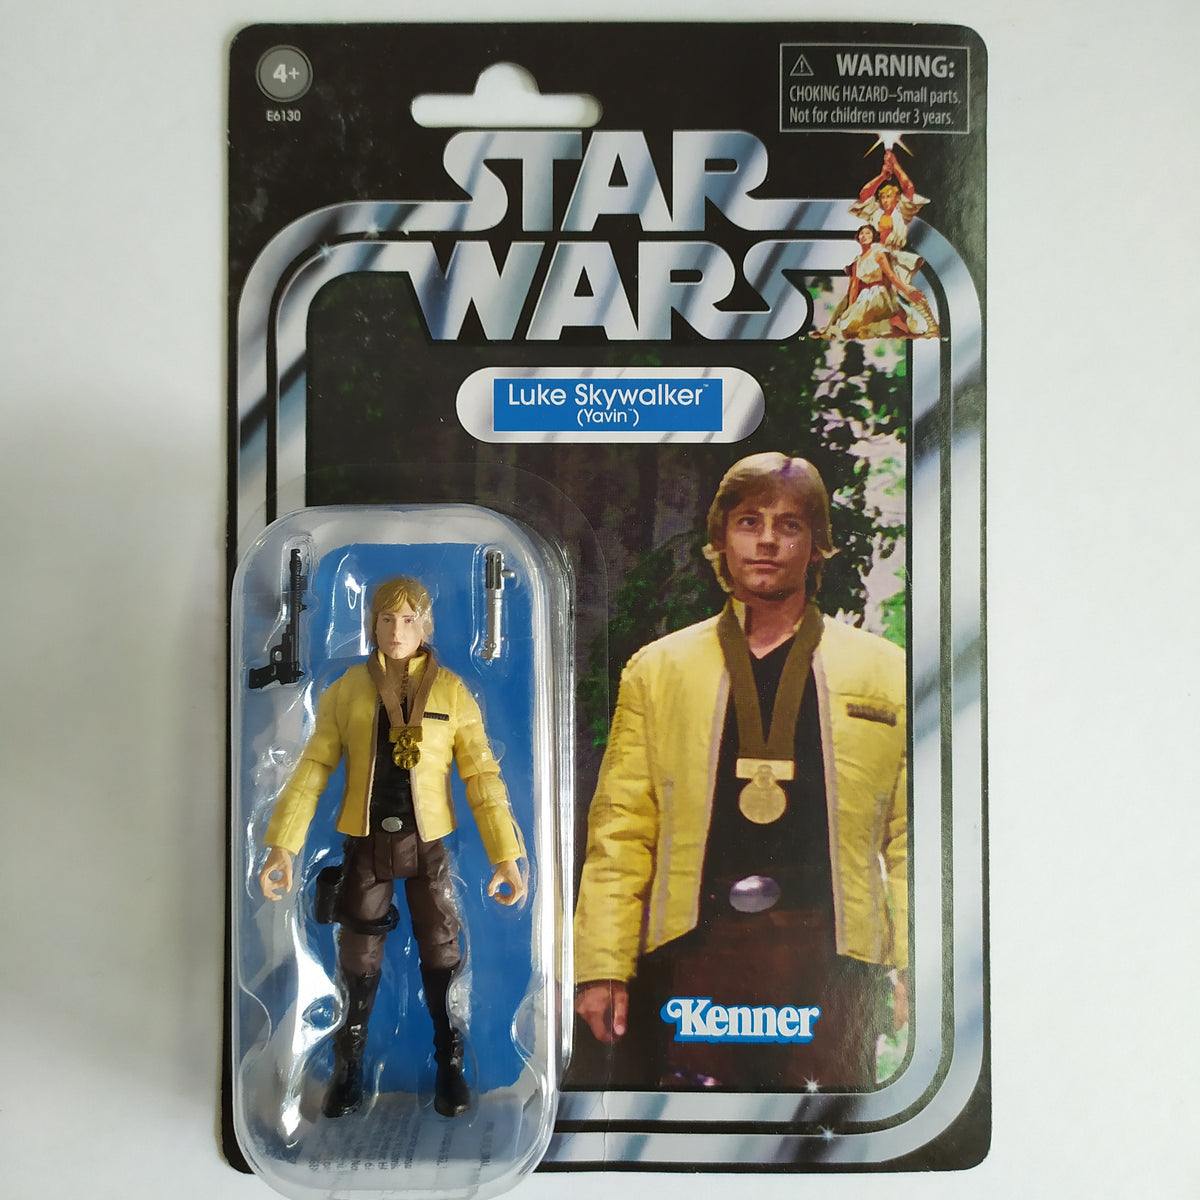 Luke Skywalker (Yavin) (VC 151)